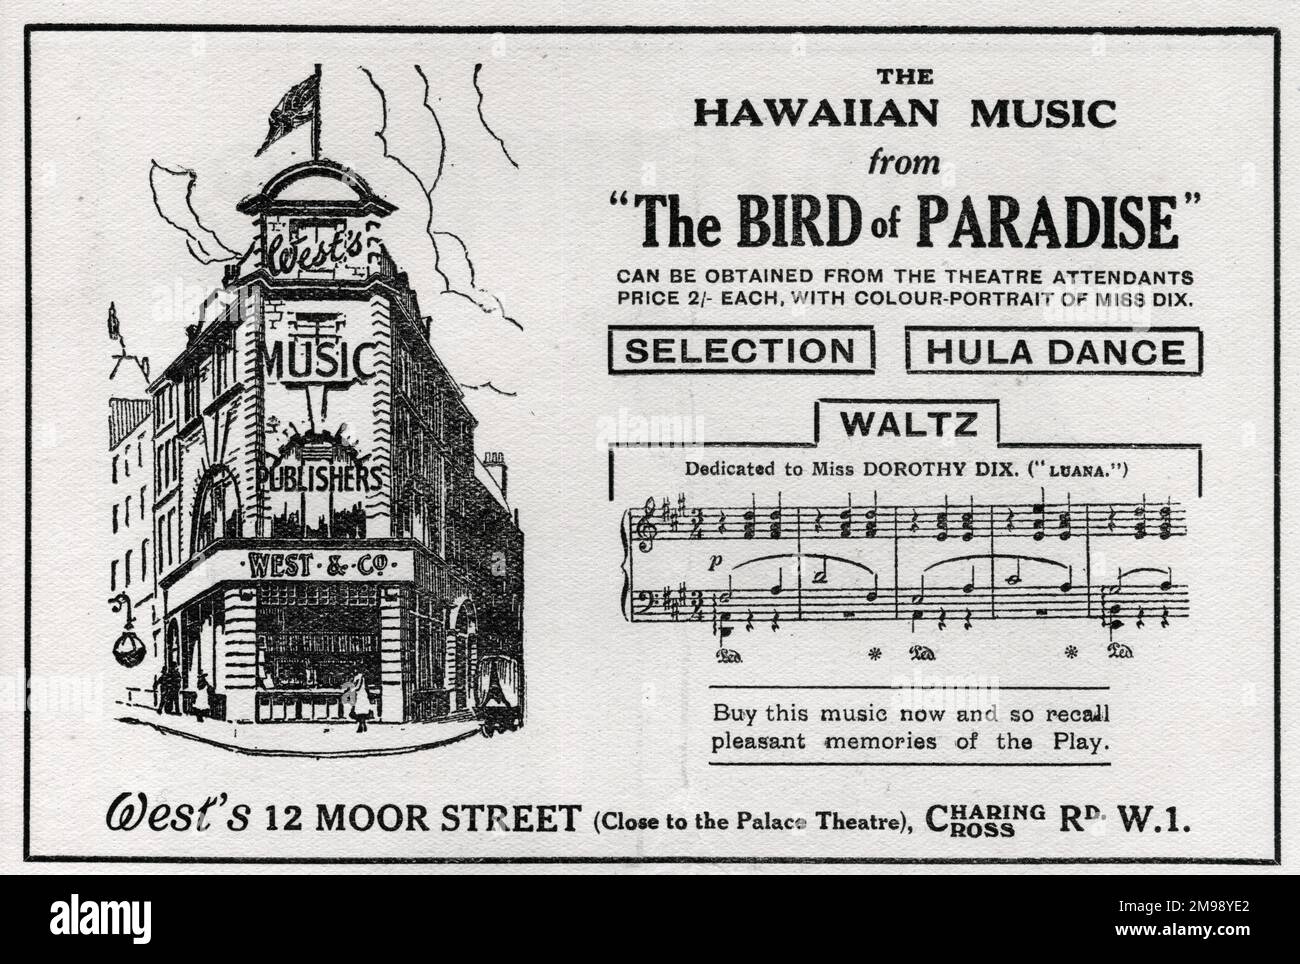 Pubblicità per West's, editori musicali, 12 Moor Street, Charing Cross Road, Londra, Settembre 1919. Con la musica hawaiana di una rappresentazione al Palace Theatre, The Bird of Paradise, con alcuni bar di un valzer dedicato a Miss Dorothy Dix (Luana). Foto Stock